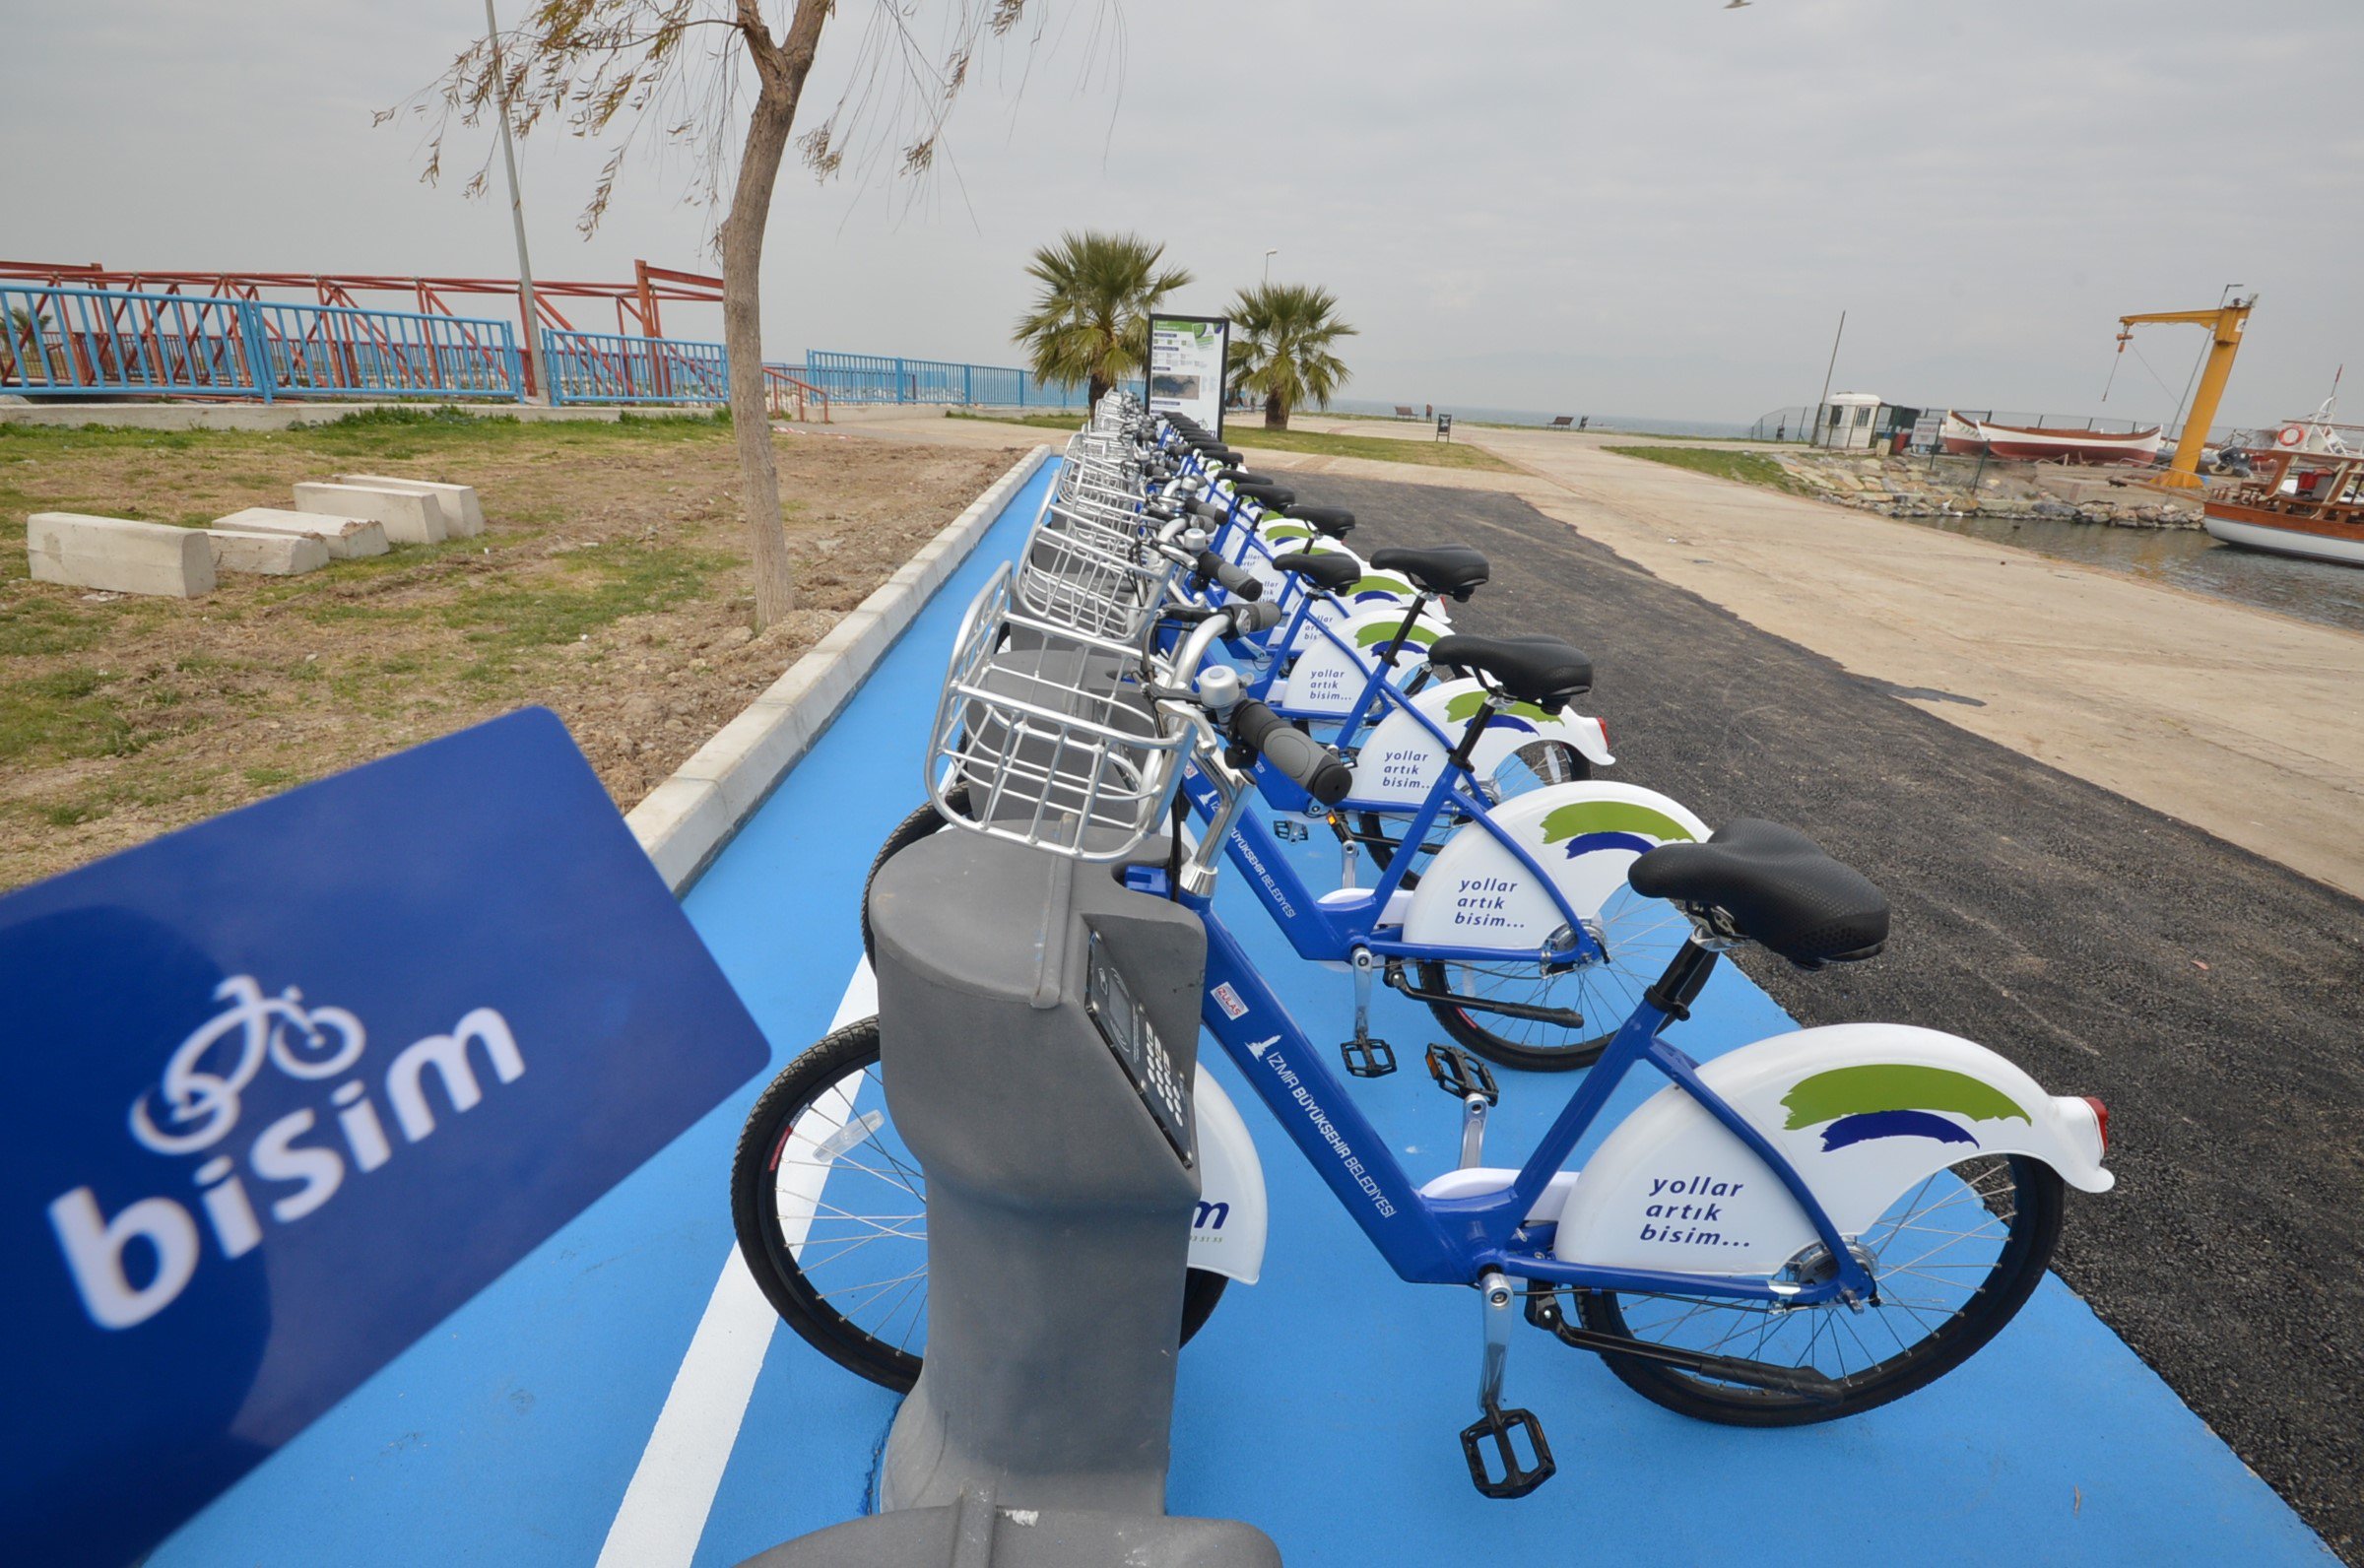 İzmir Büyükşehir Belediyesi on X: "2014'te başlattığımız bisiklet kiralama  sistemi BİSİM, 4 yıl içinde hayatımıza çok şey kattı. 34 istasyonda verdiği  hizmetle bisikleti spor ve hobi aracı olmaktan çıkaran BİSİM, 1.3 milyon